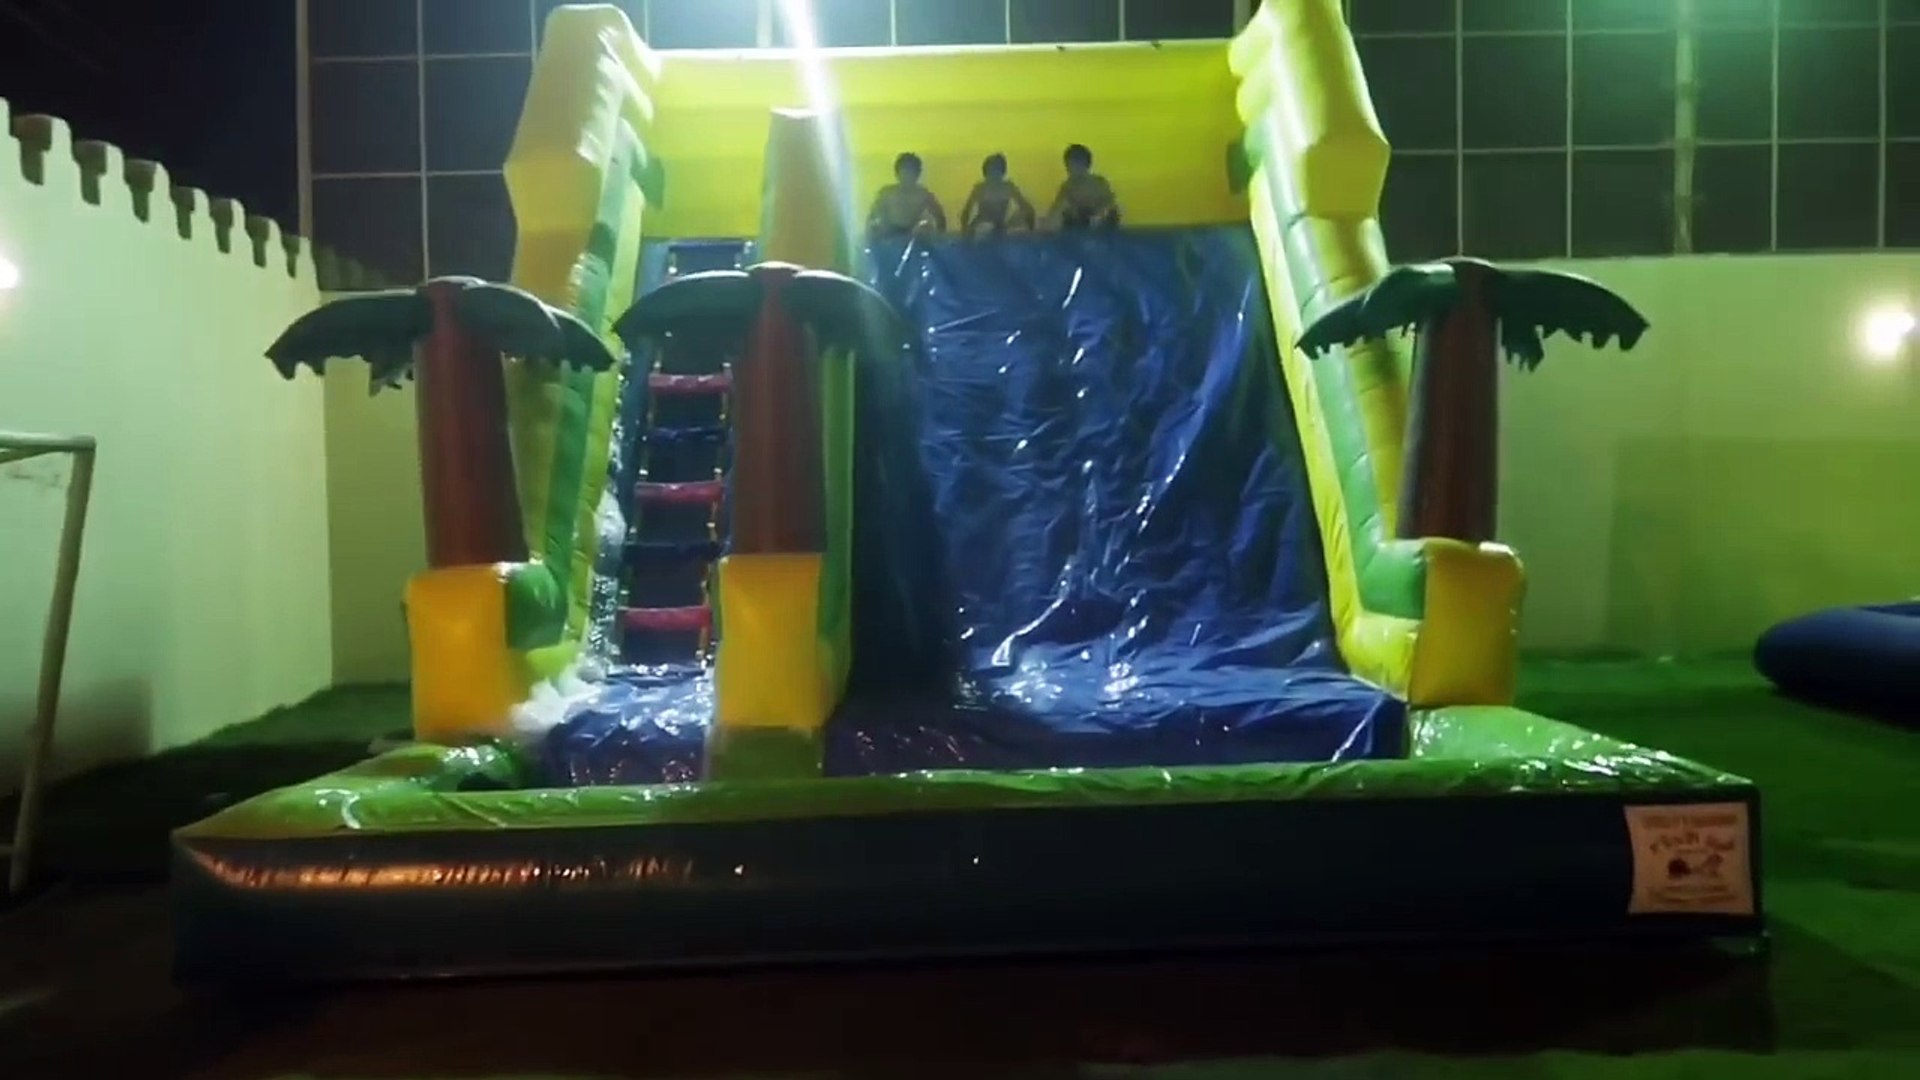 حمده وسلتلت يلعبون مع اهل الحارة في الملعب الصابوني | ام شعفه طاحت في  المسبح - فيديو Dailymotion